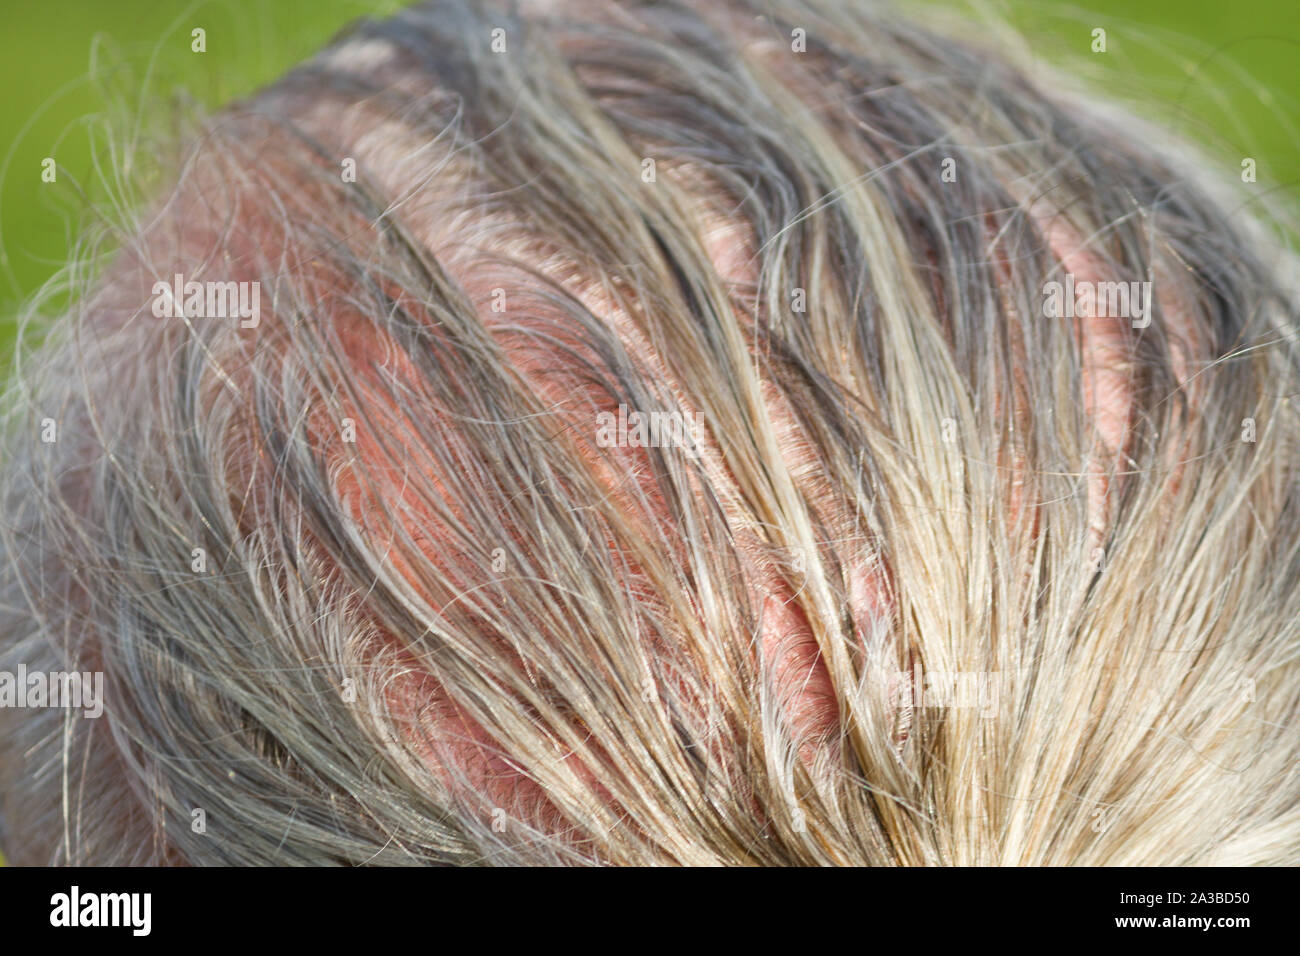 Human alopecia or hair loss. Man starting to get bald Stock Photo